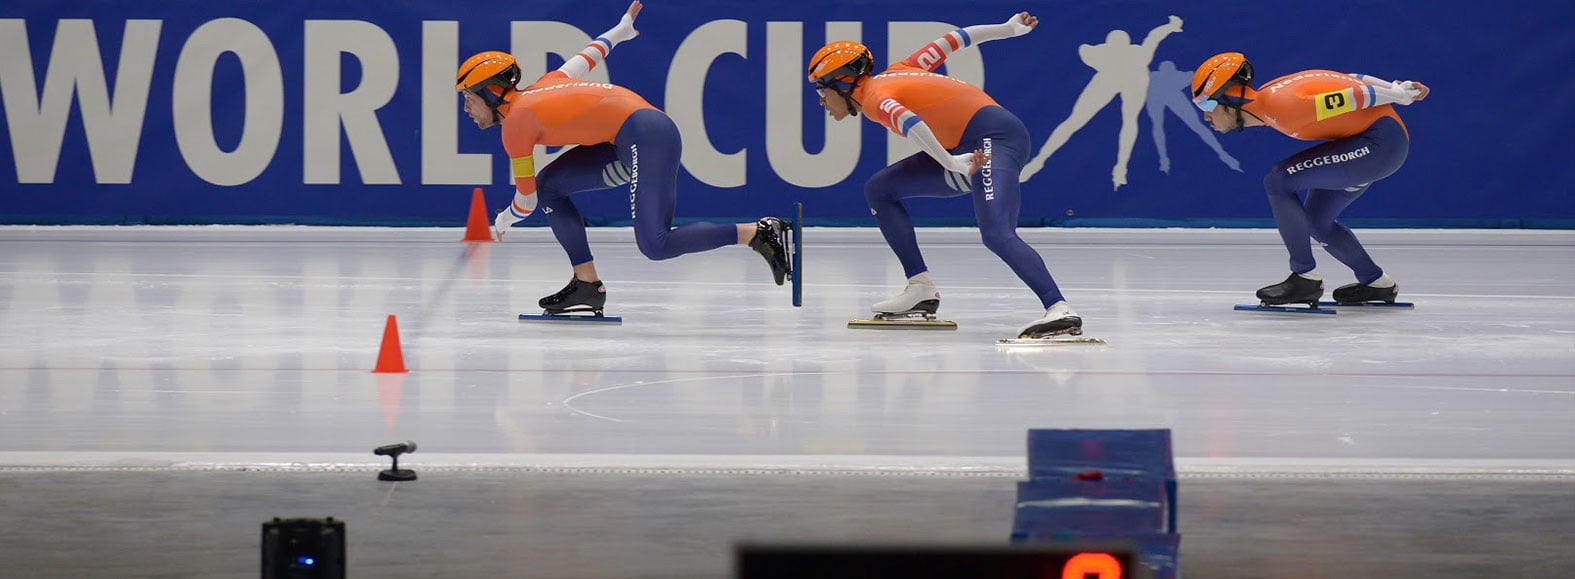 Team NL tijdens de Worldcup schaatsen